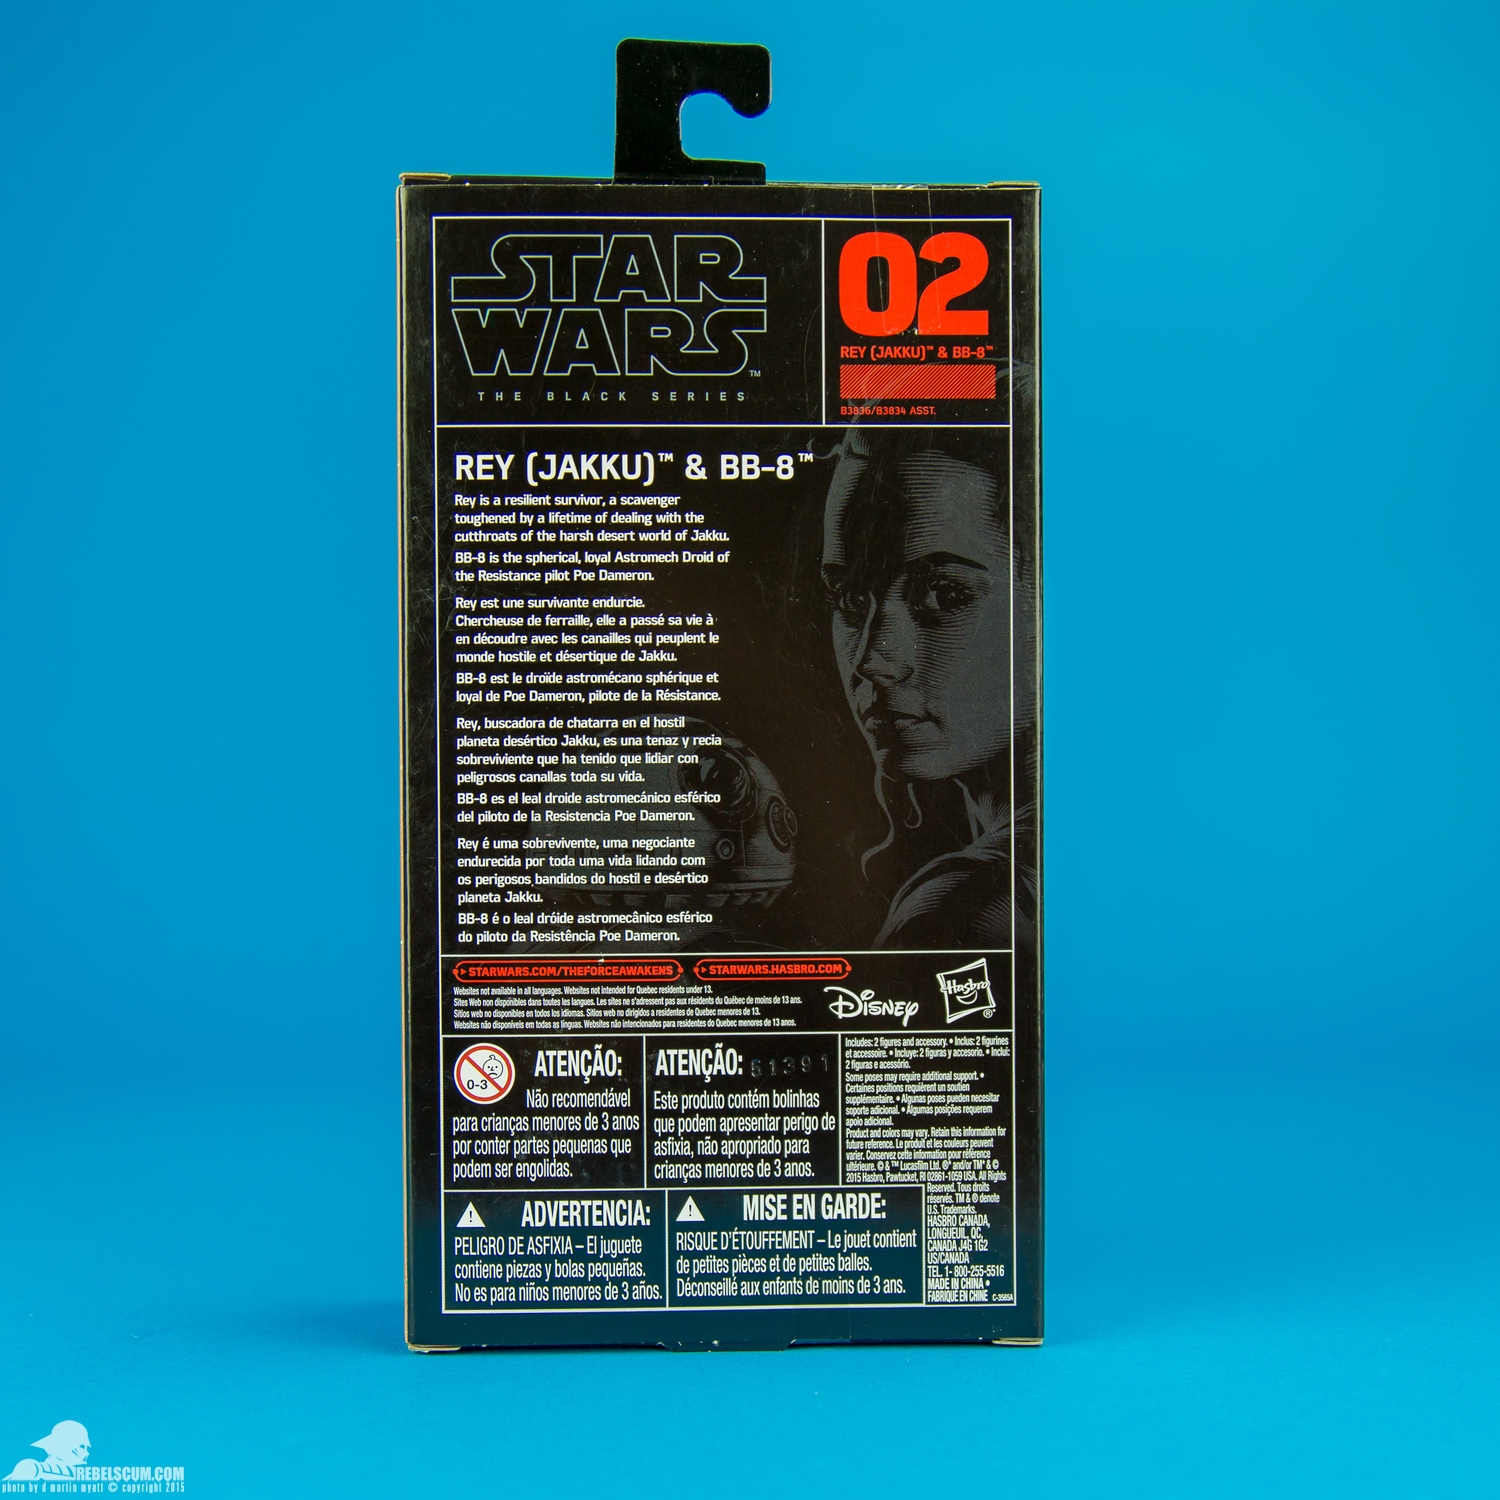 02-Rey-Jakku-BB-8-The-Black-Series-Star-Wars-2015-018.jpg